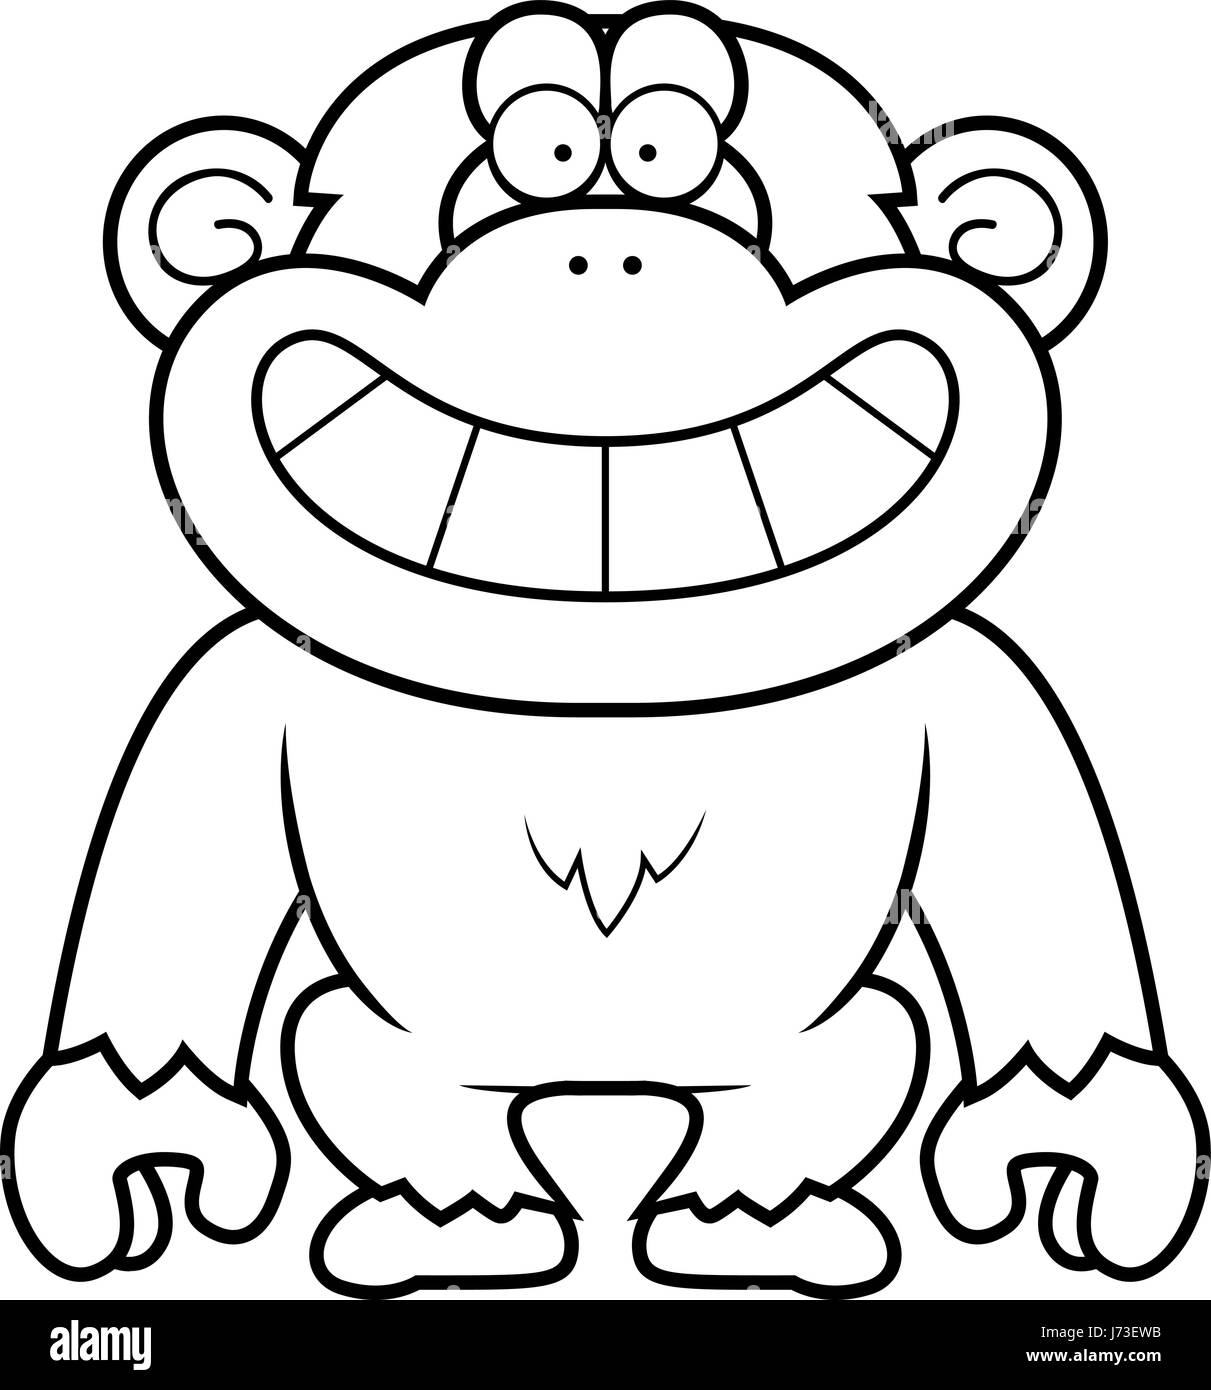 Eine Karikatur Illustration eines Schimpansen grinsend. Stock Vektor